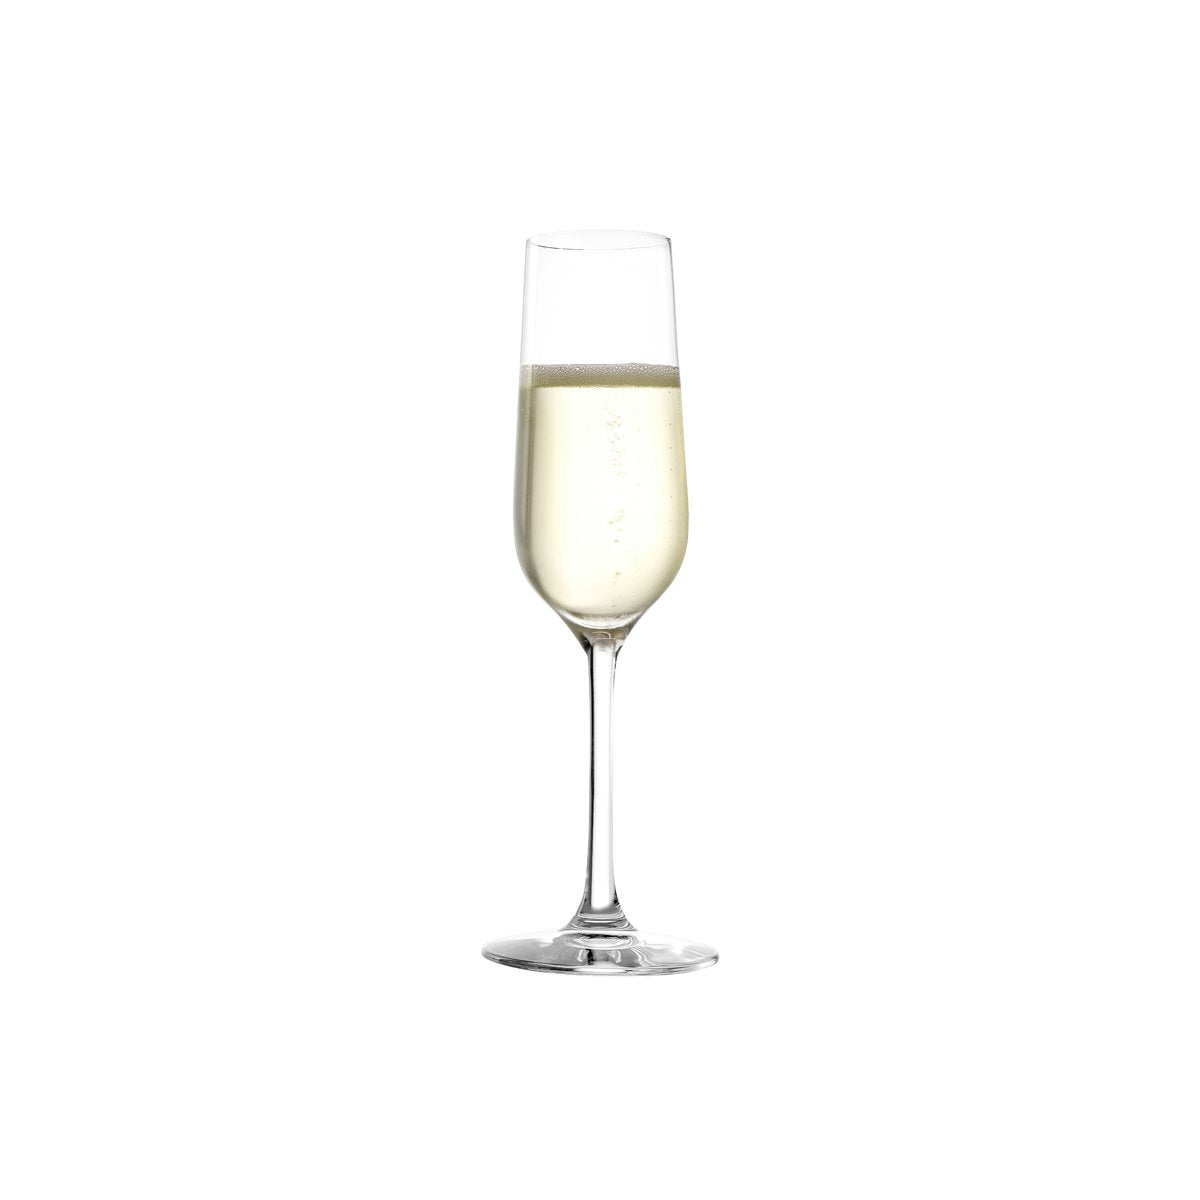 360-989 Stolzle Revolution Champagne Flute 200ml Tomkin Australia Hospitality Supplies